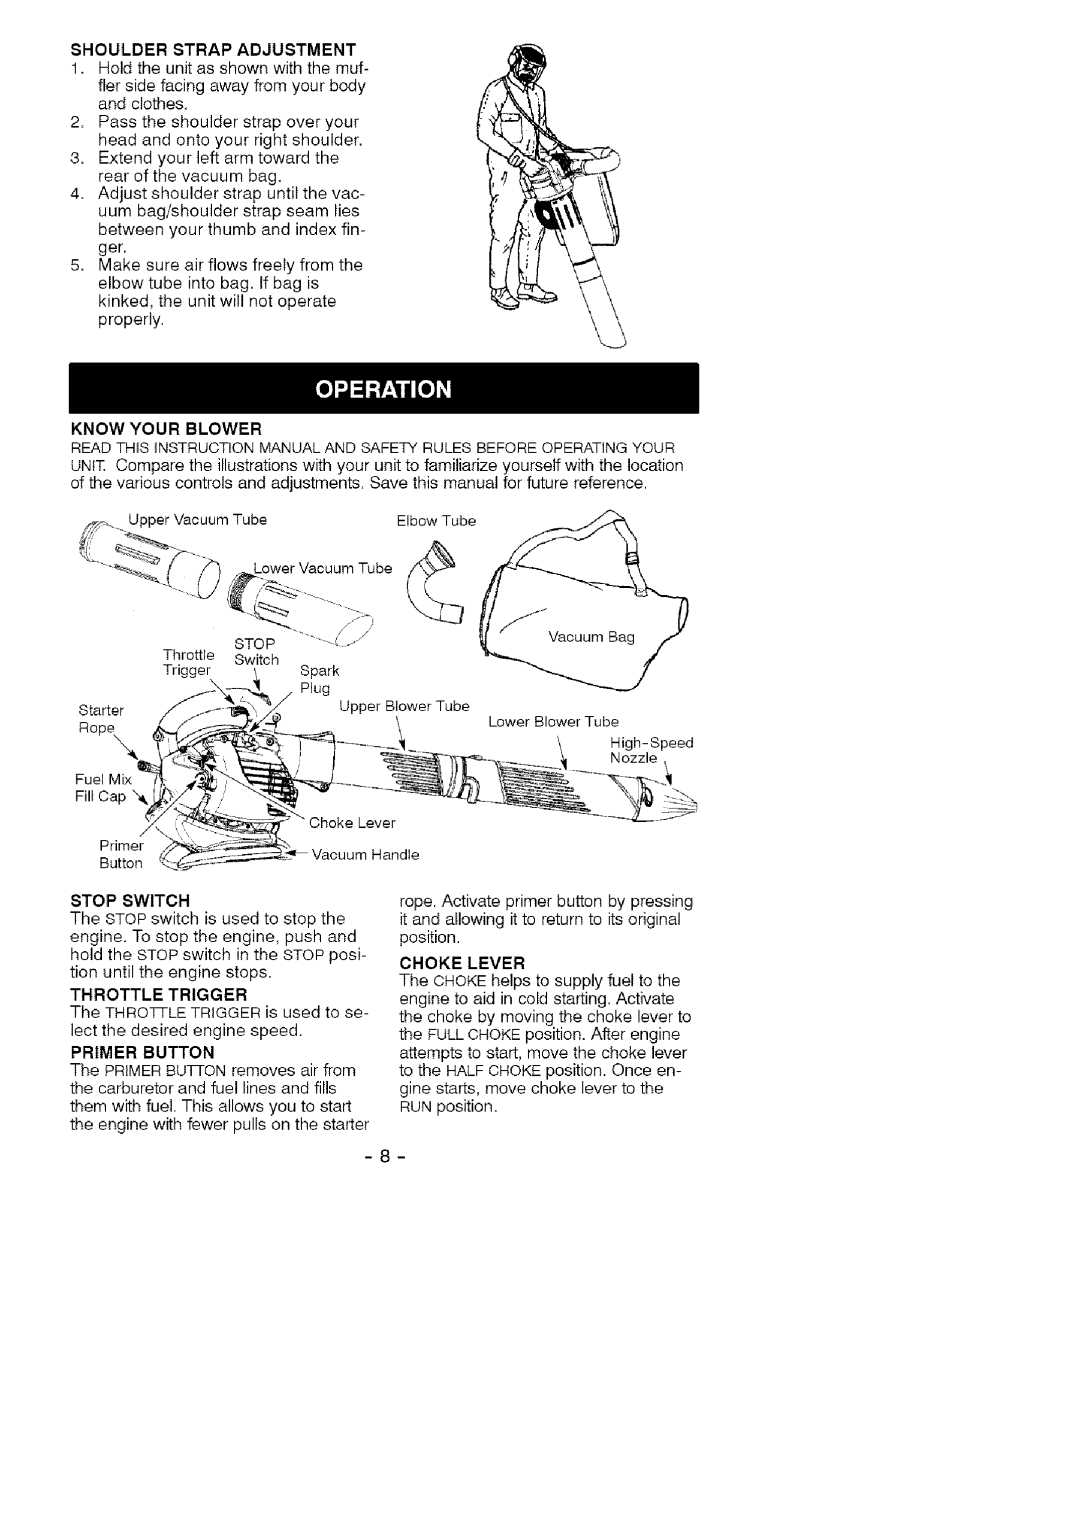 Craftsman 358.79474 manual Shoulder Strap Adjustment, Stop Switch, Choke Lever 